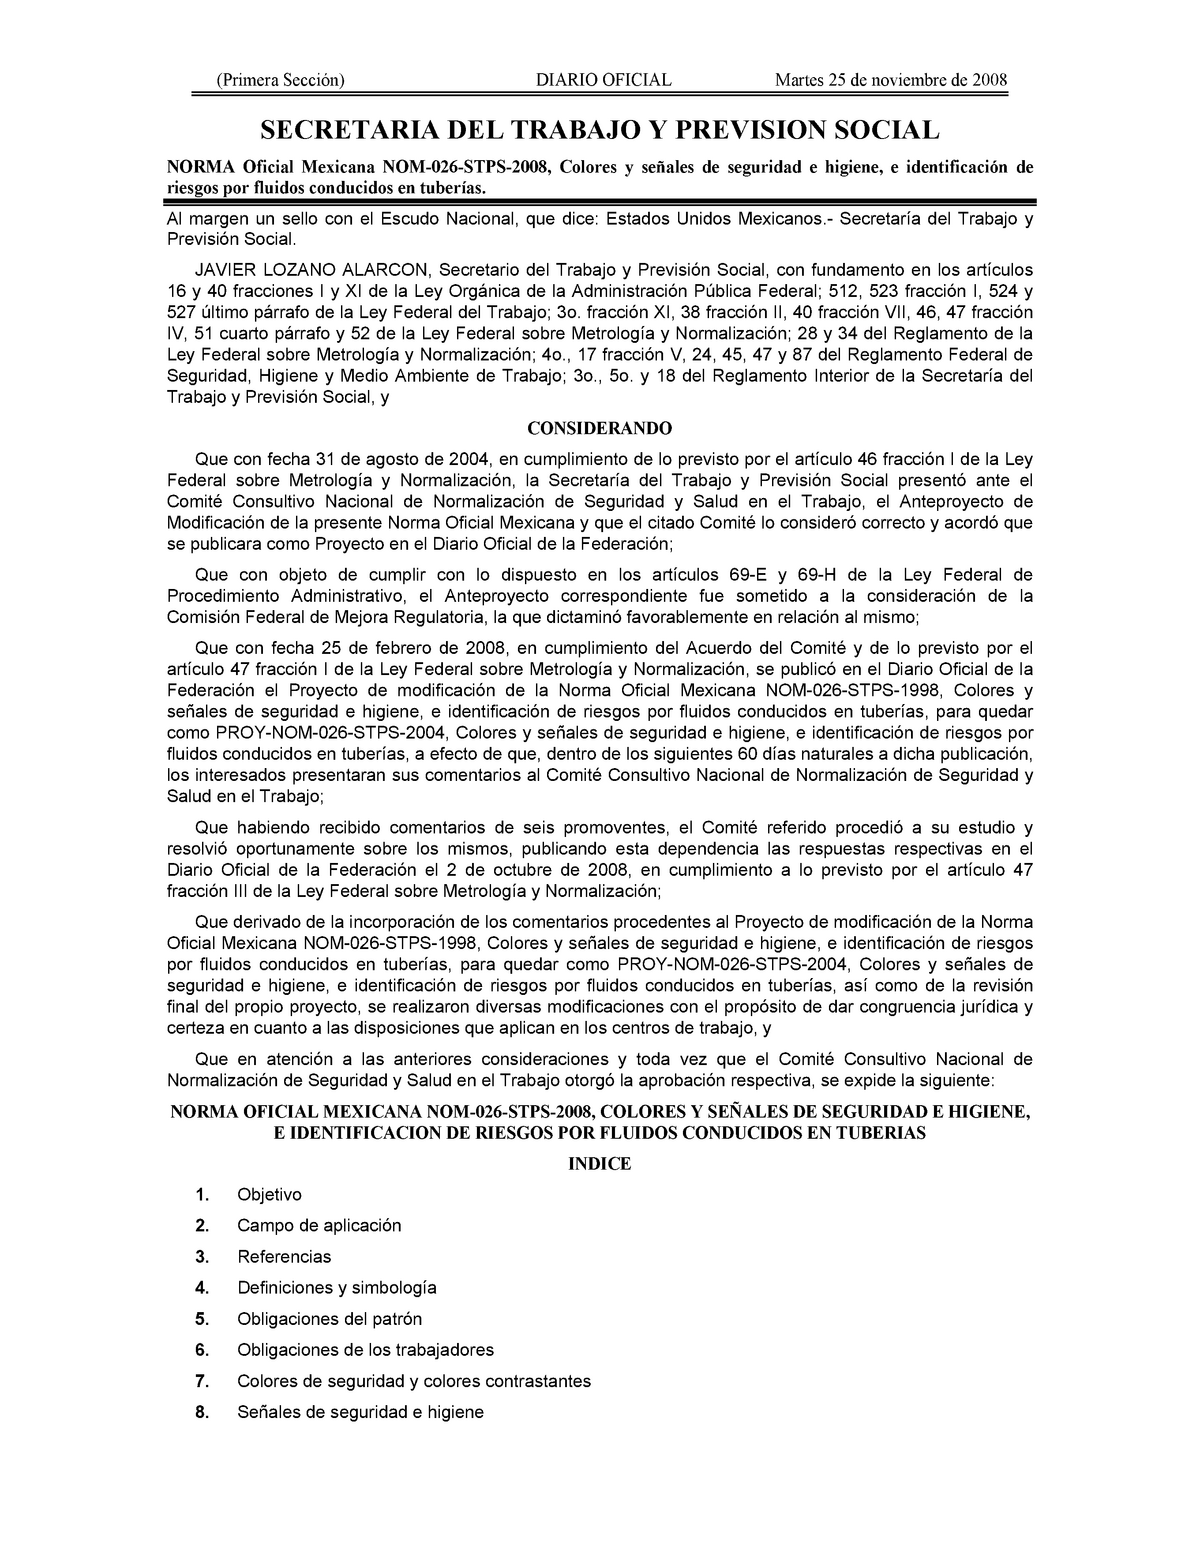 NOM 026 STPS 2008 - Norma Oficial Mexica 026 resumen - (Primera Sección